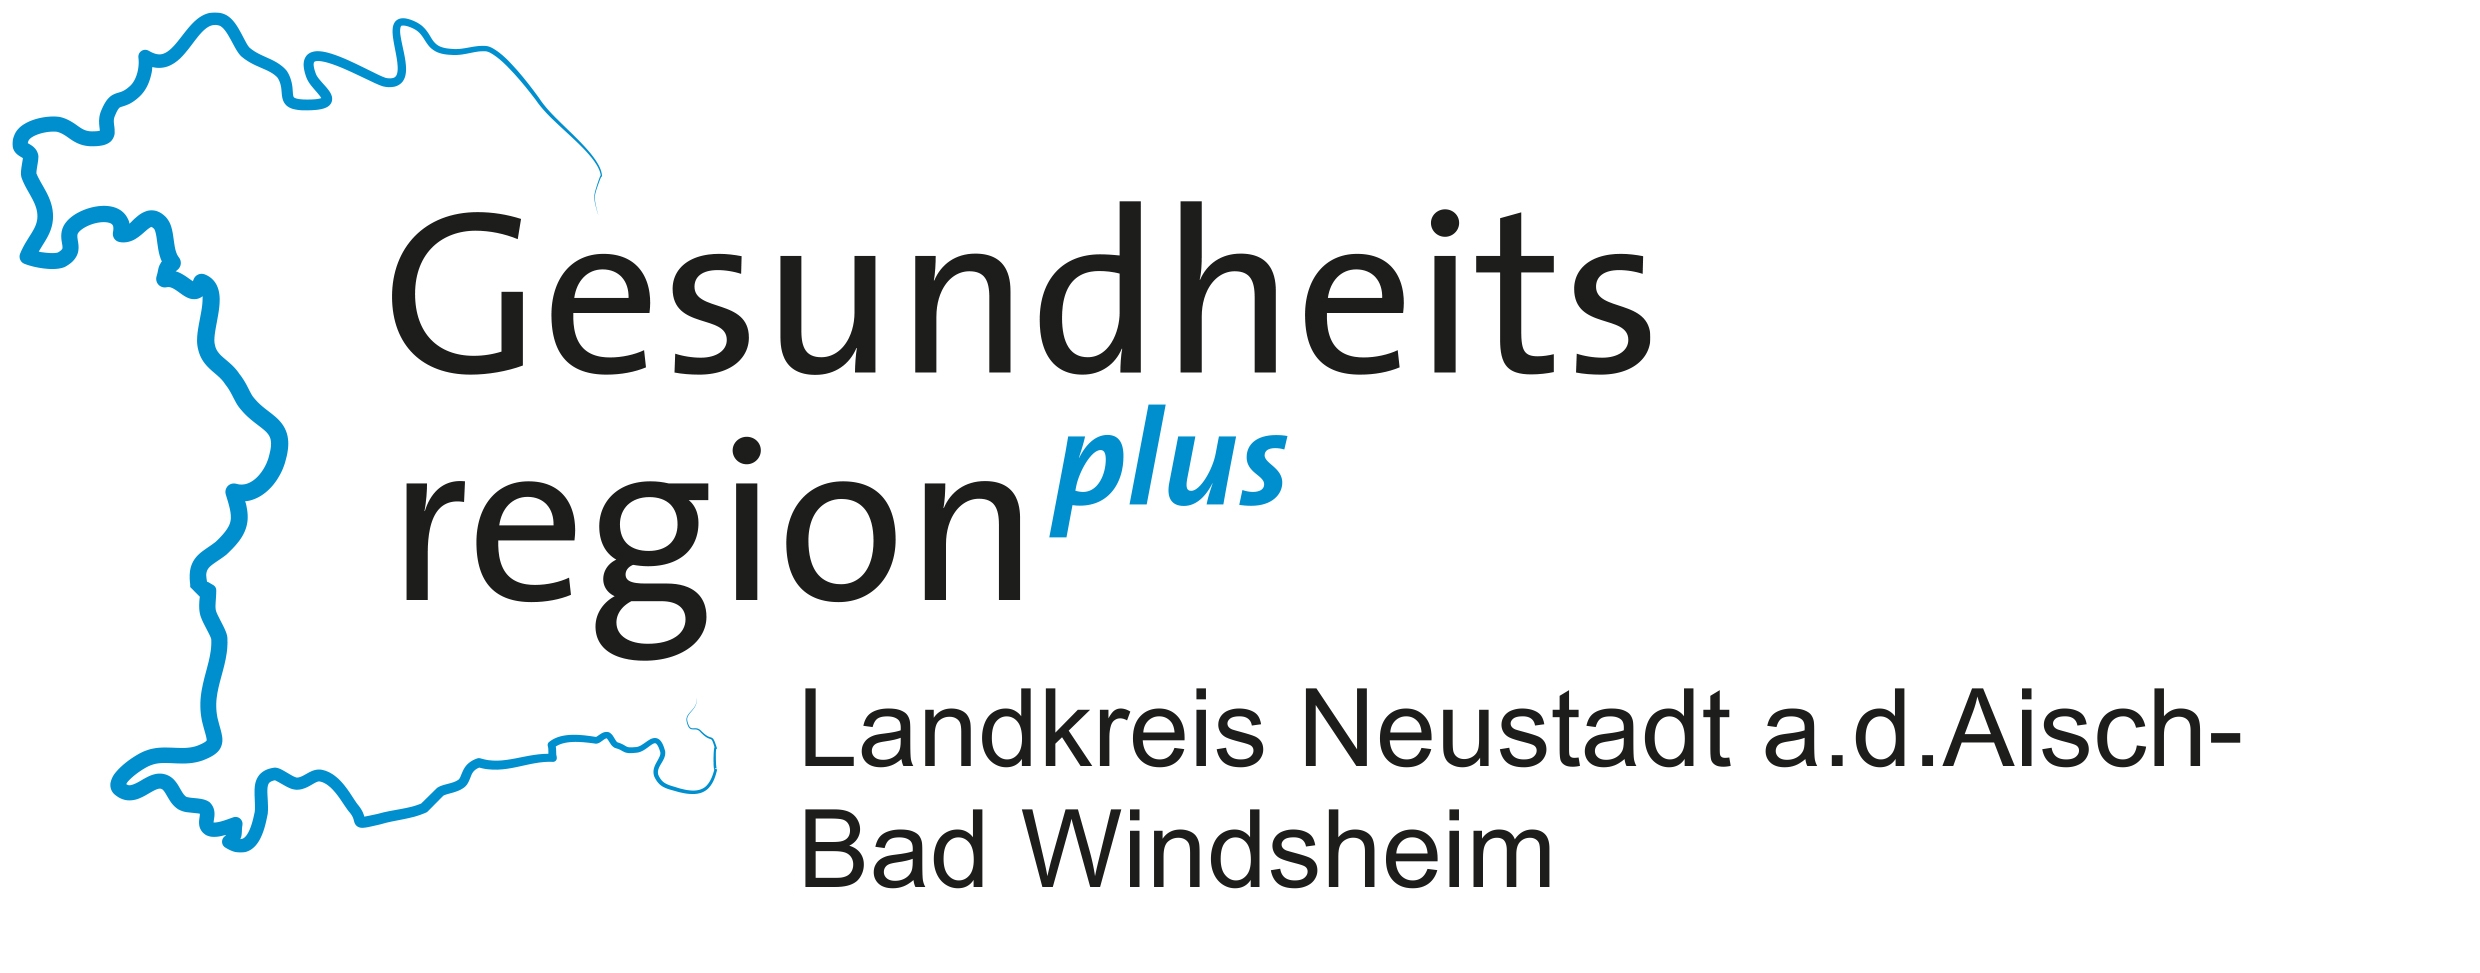 Gesundheitsregion Plus Landkreis Neustadt a.d. Aisch - Bad Windsheim